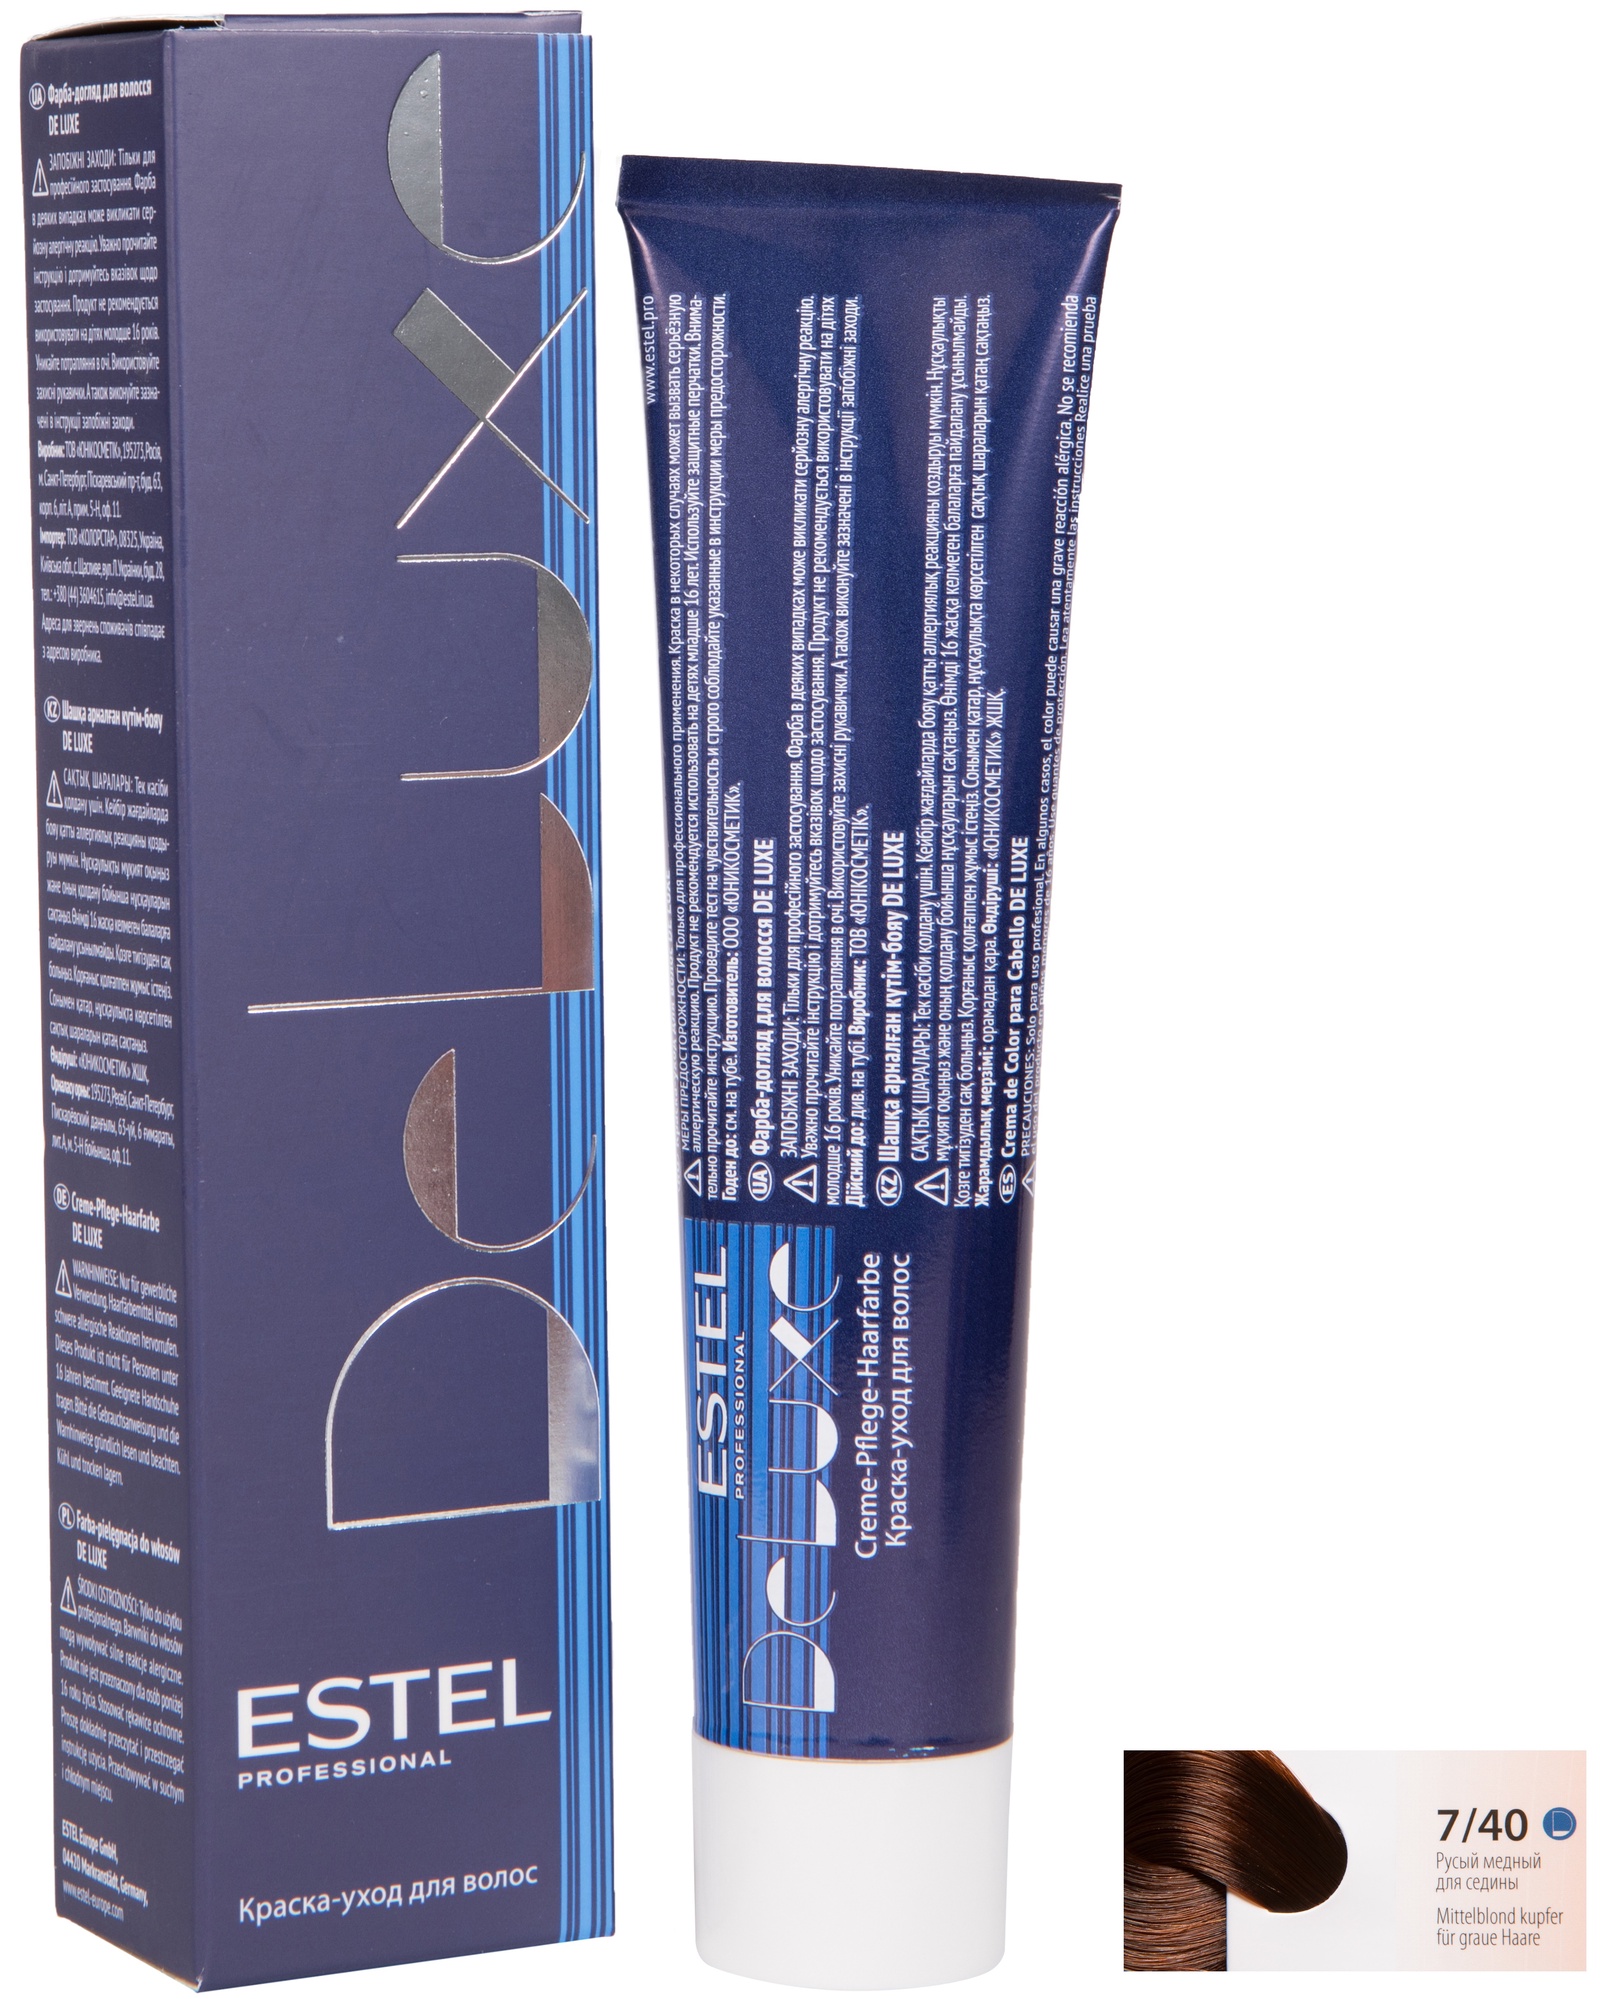 Краска для волос ESTEL PROFESSIONAL 7/40 DE LUXE краска-уход для окрашивания волос, русый медный для седины 60 мл